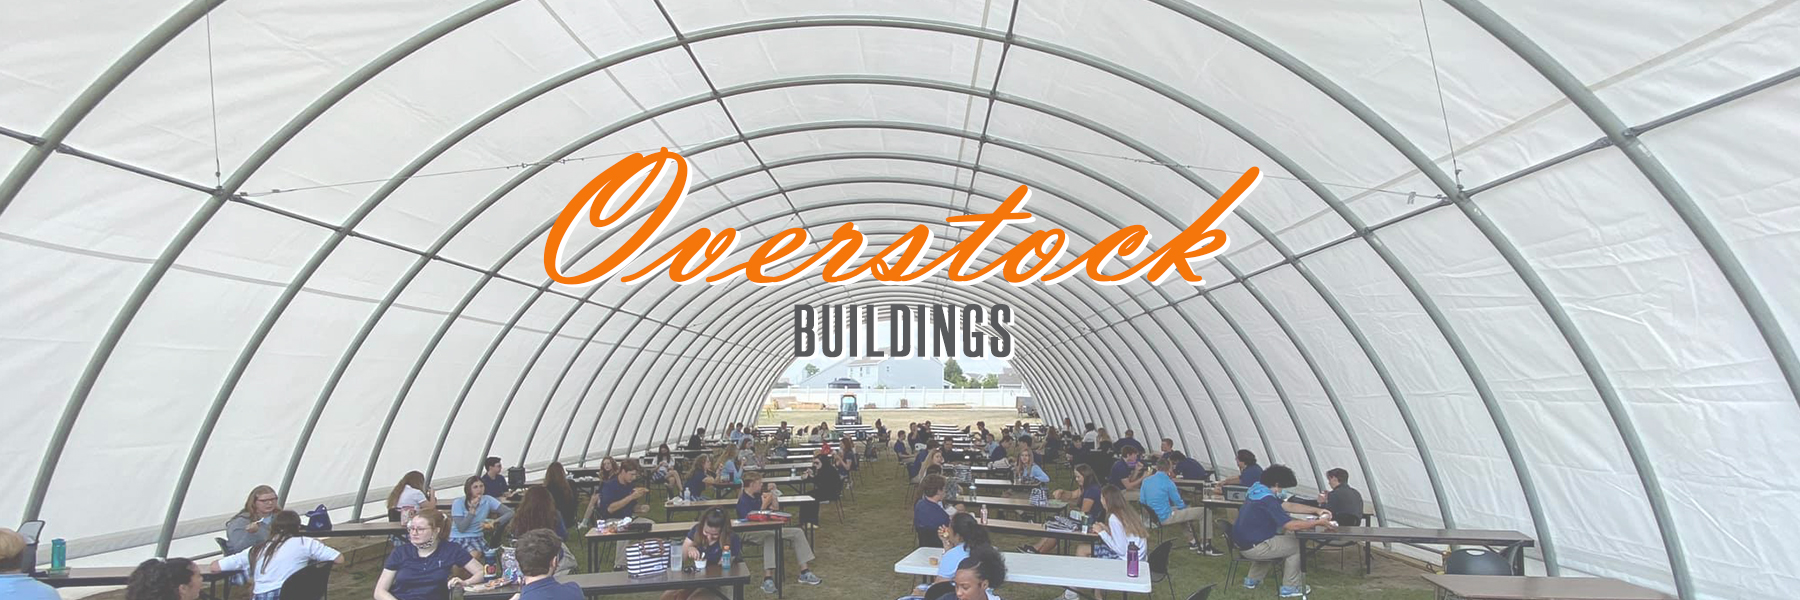 Overstock Buildings